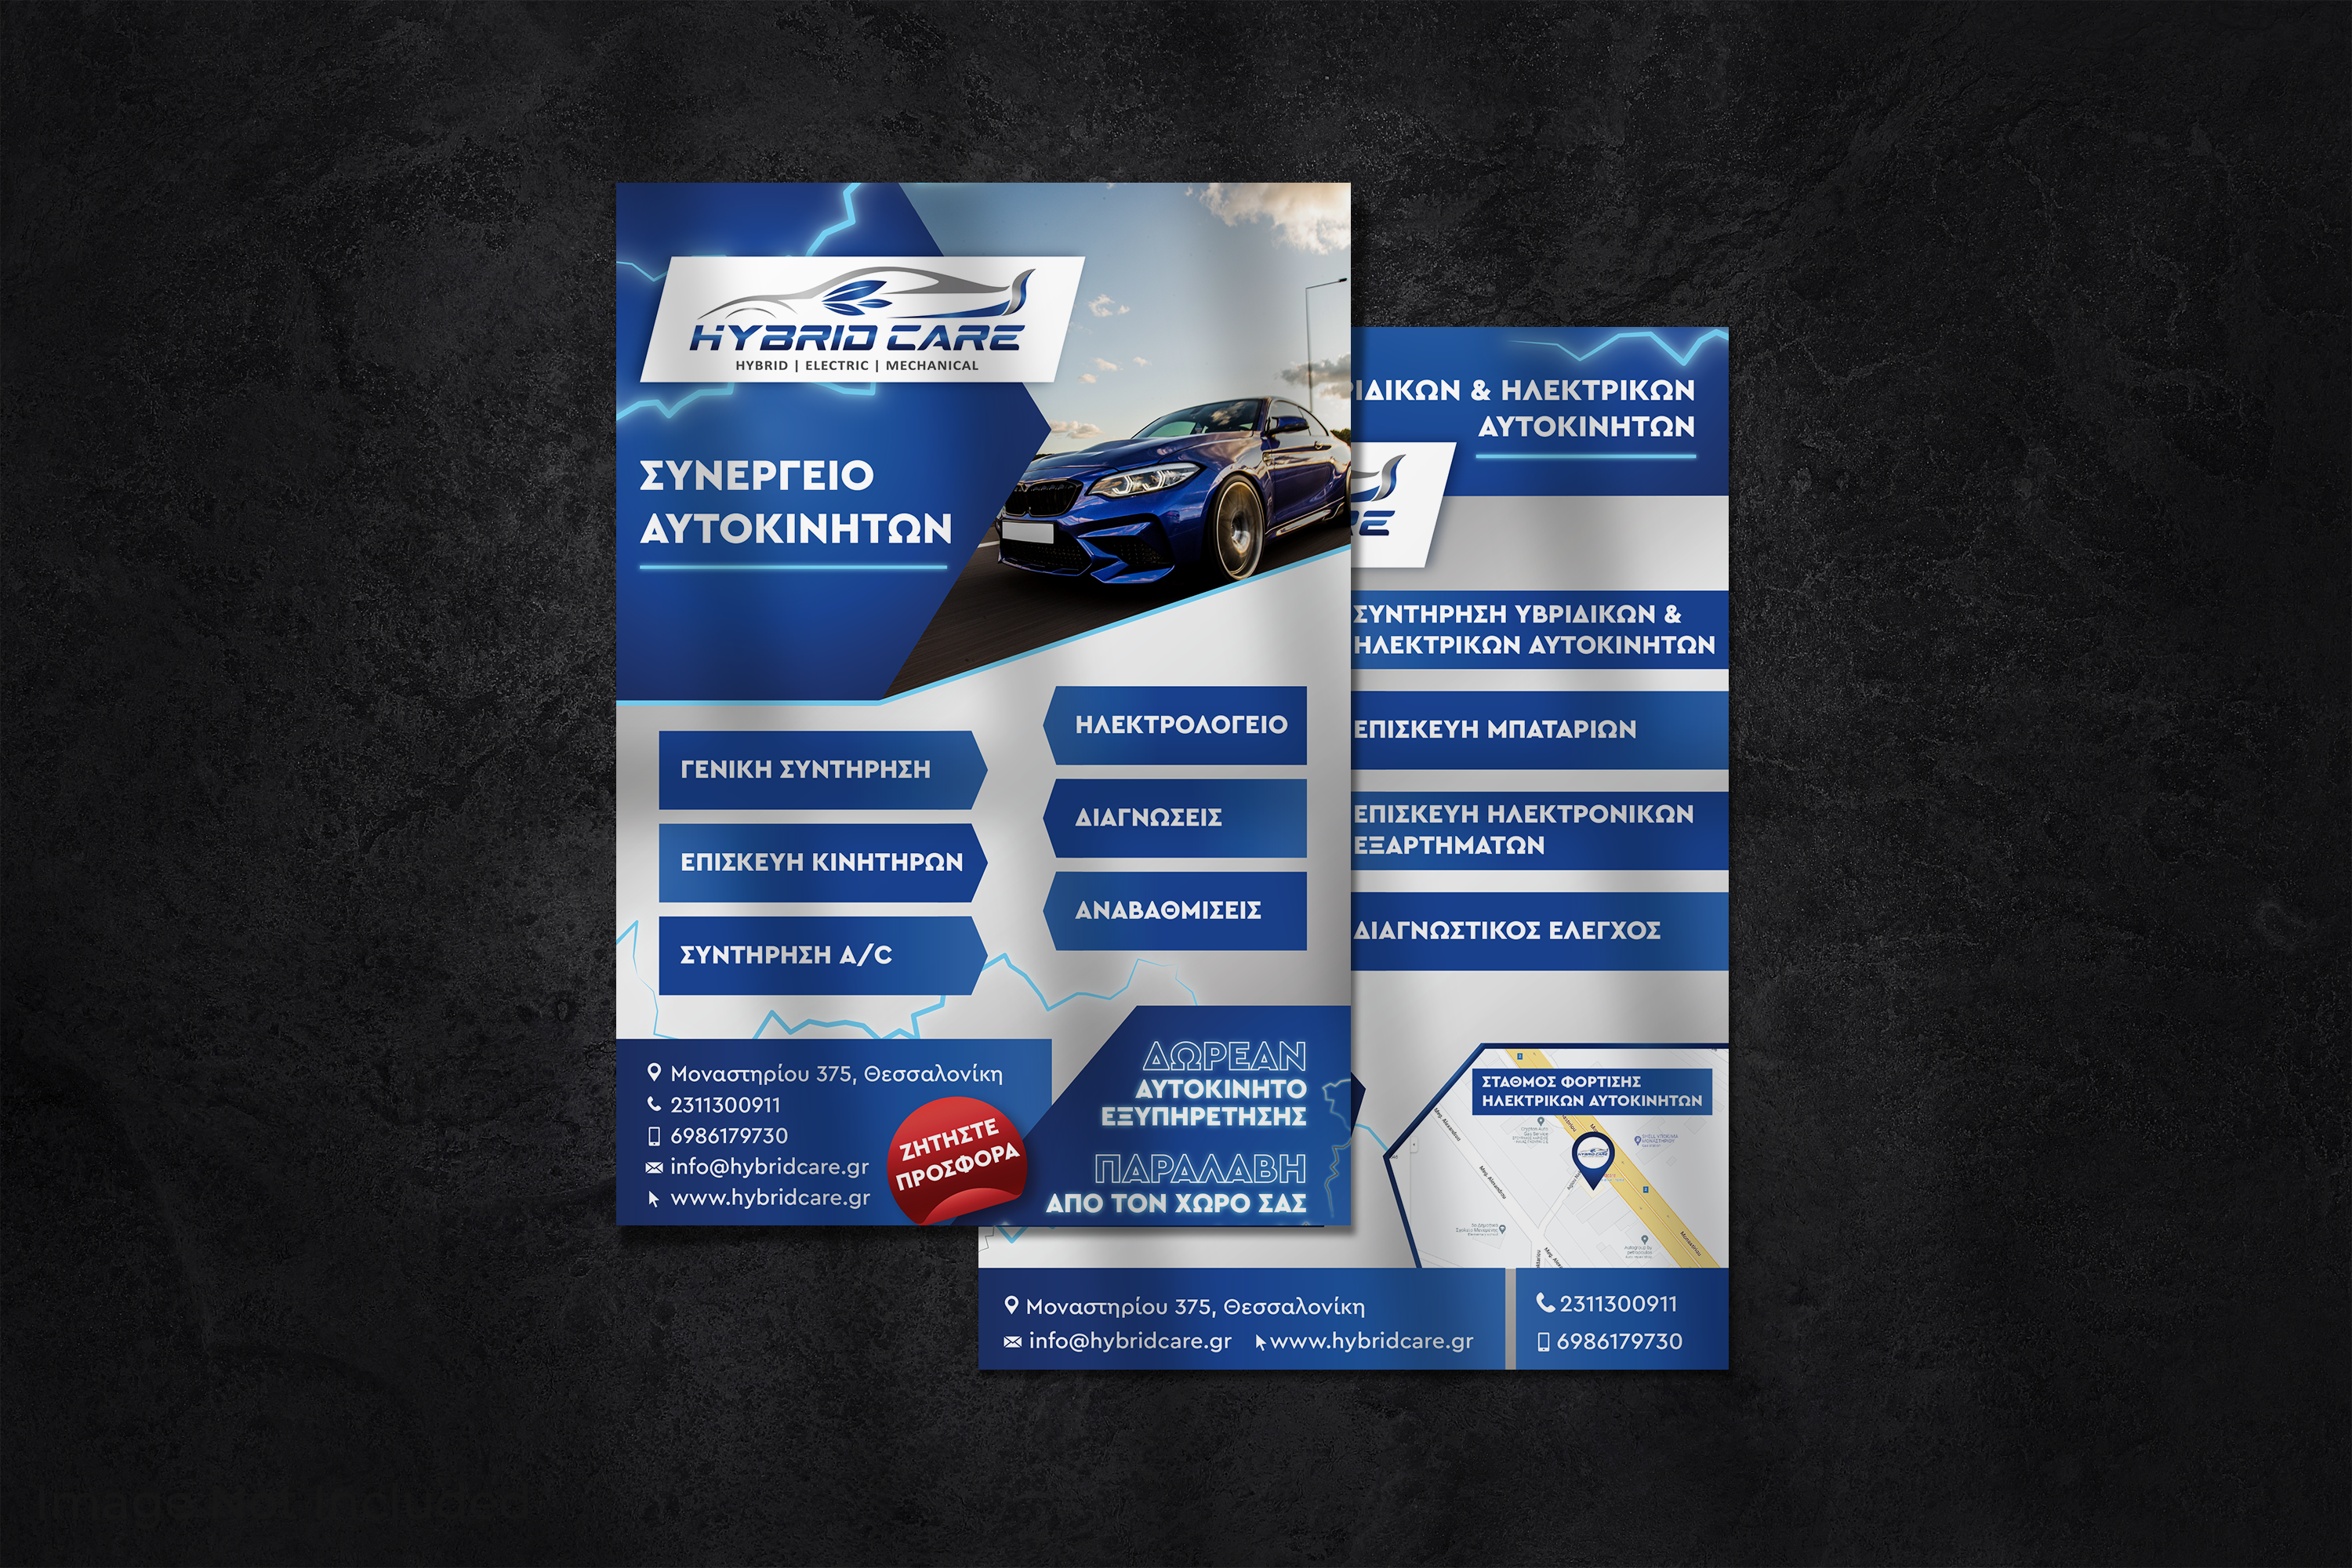 hybridcare-synergeio-aftokiniton-logo-creation